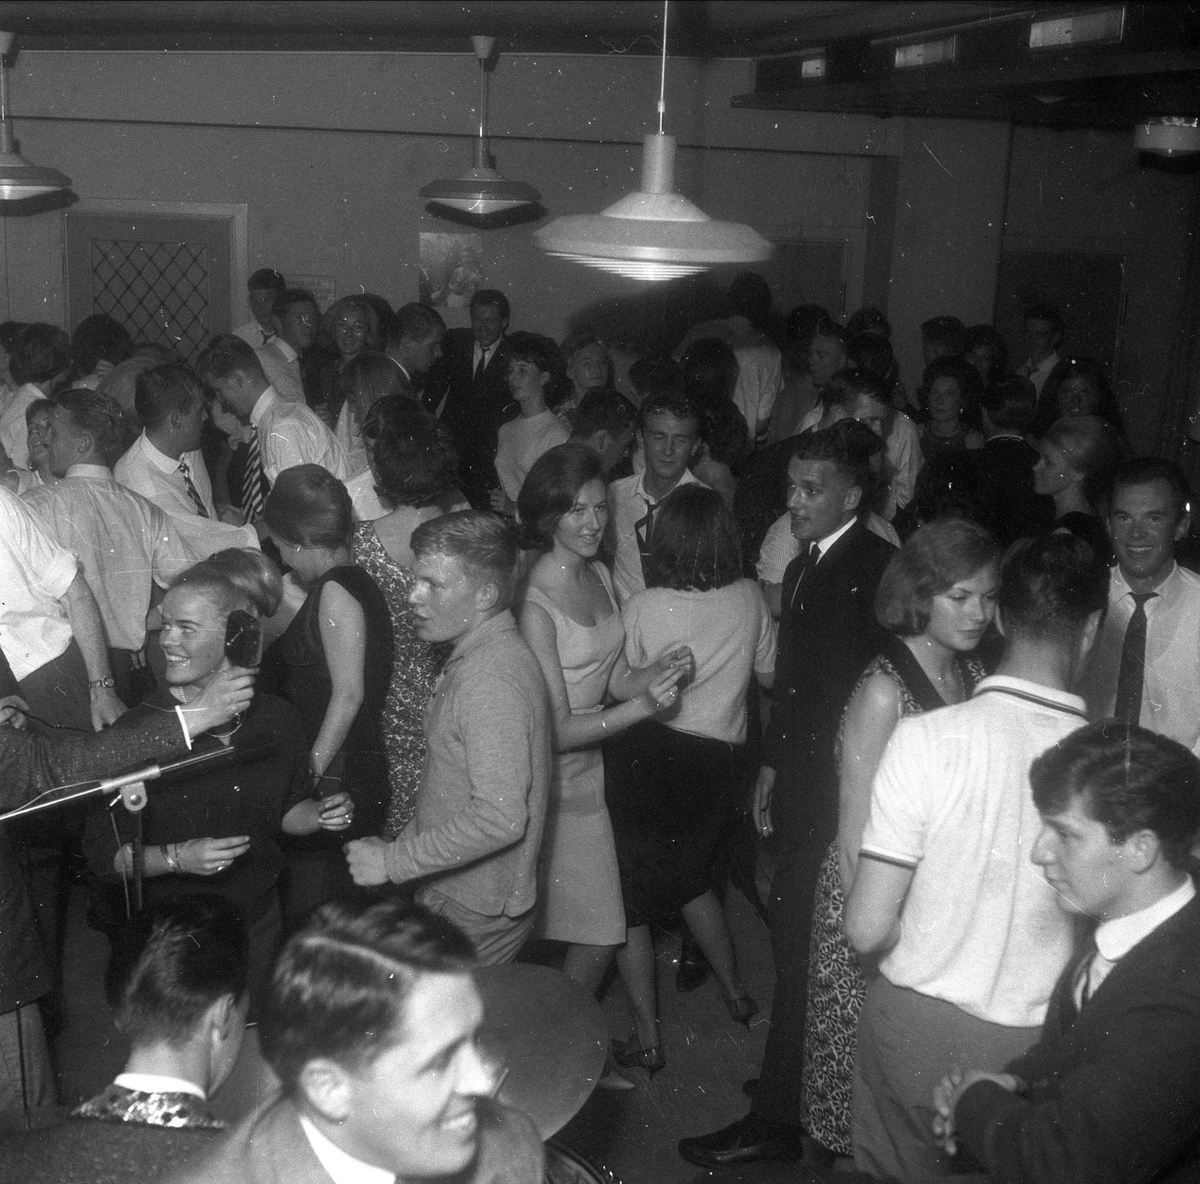 The Quartermasters spiller til dans på Club 52 på Toms Hotel i Bergen med Elin Jensen som sologitarist (Norges første kvinnelige), 16.06.1964.